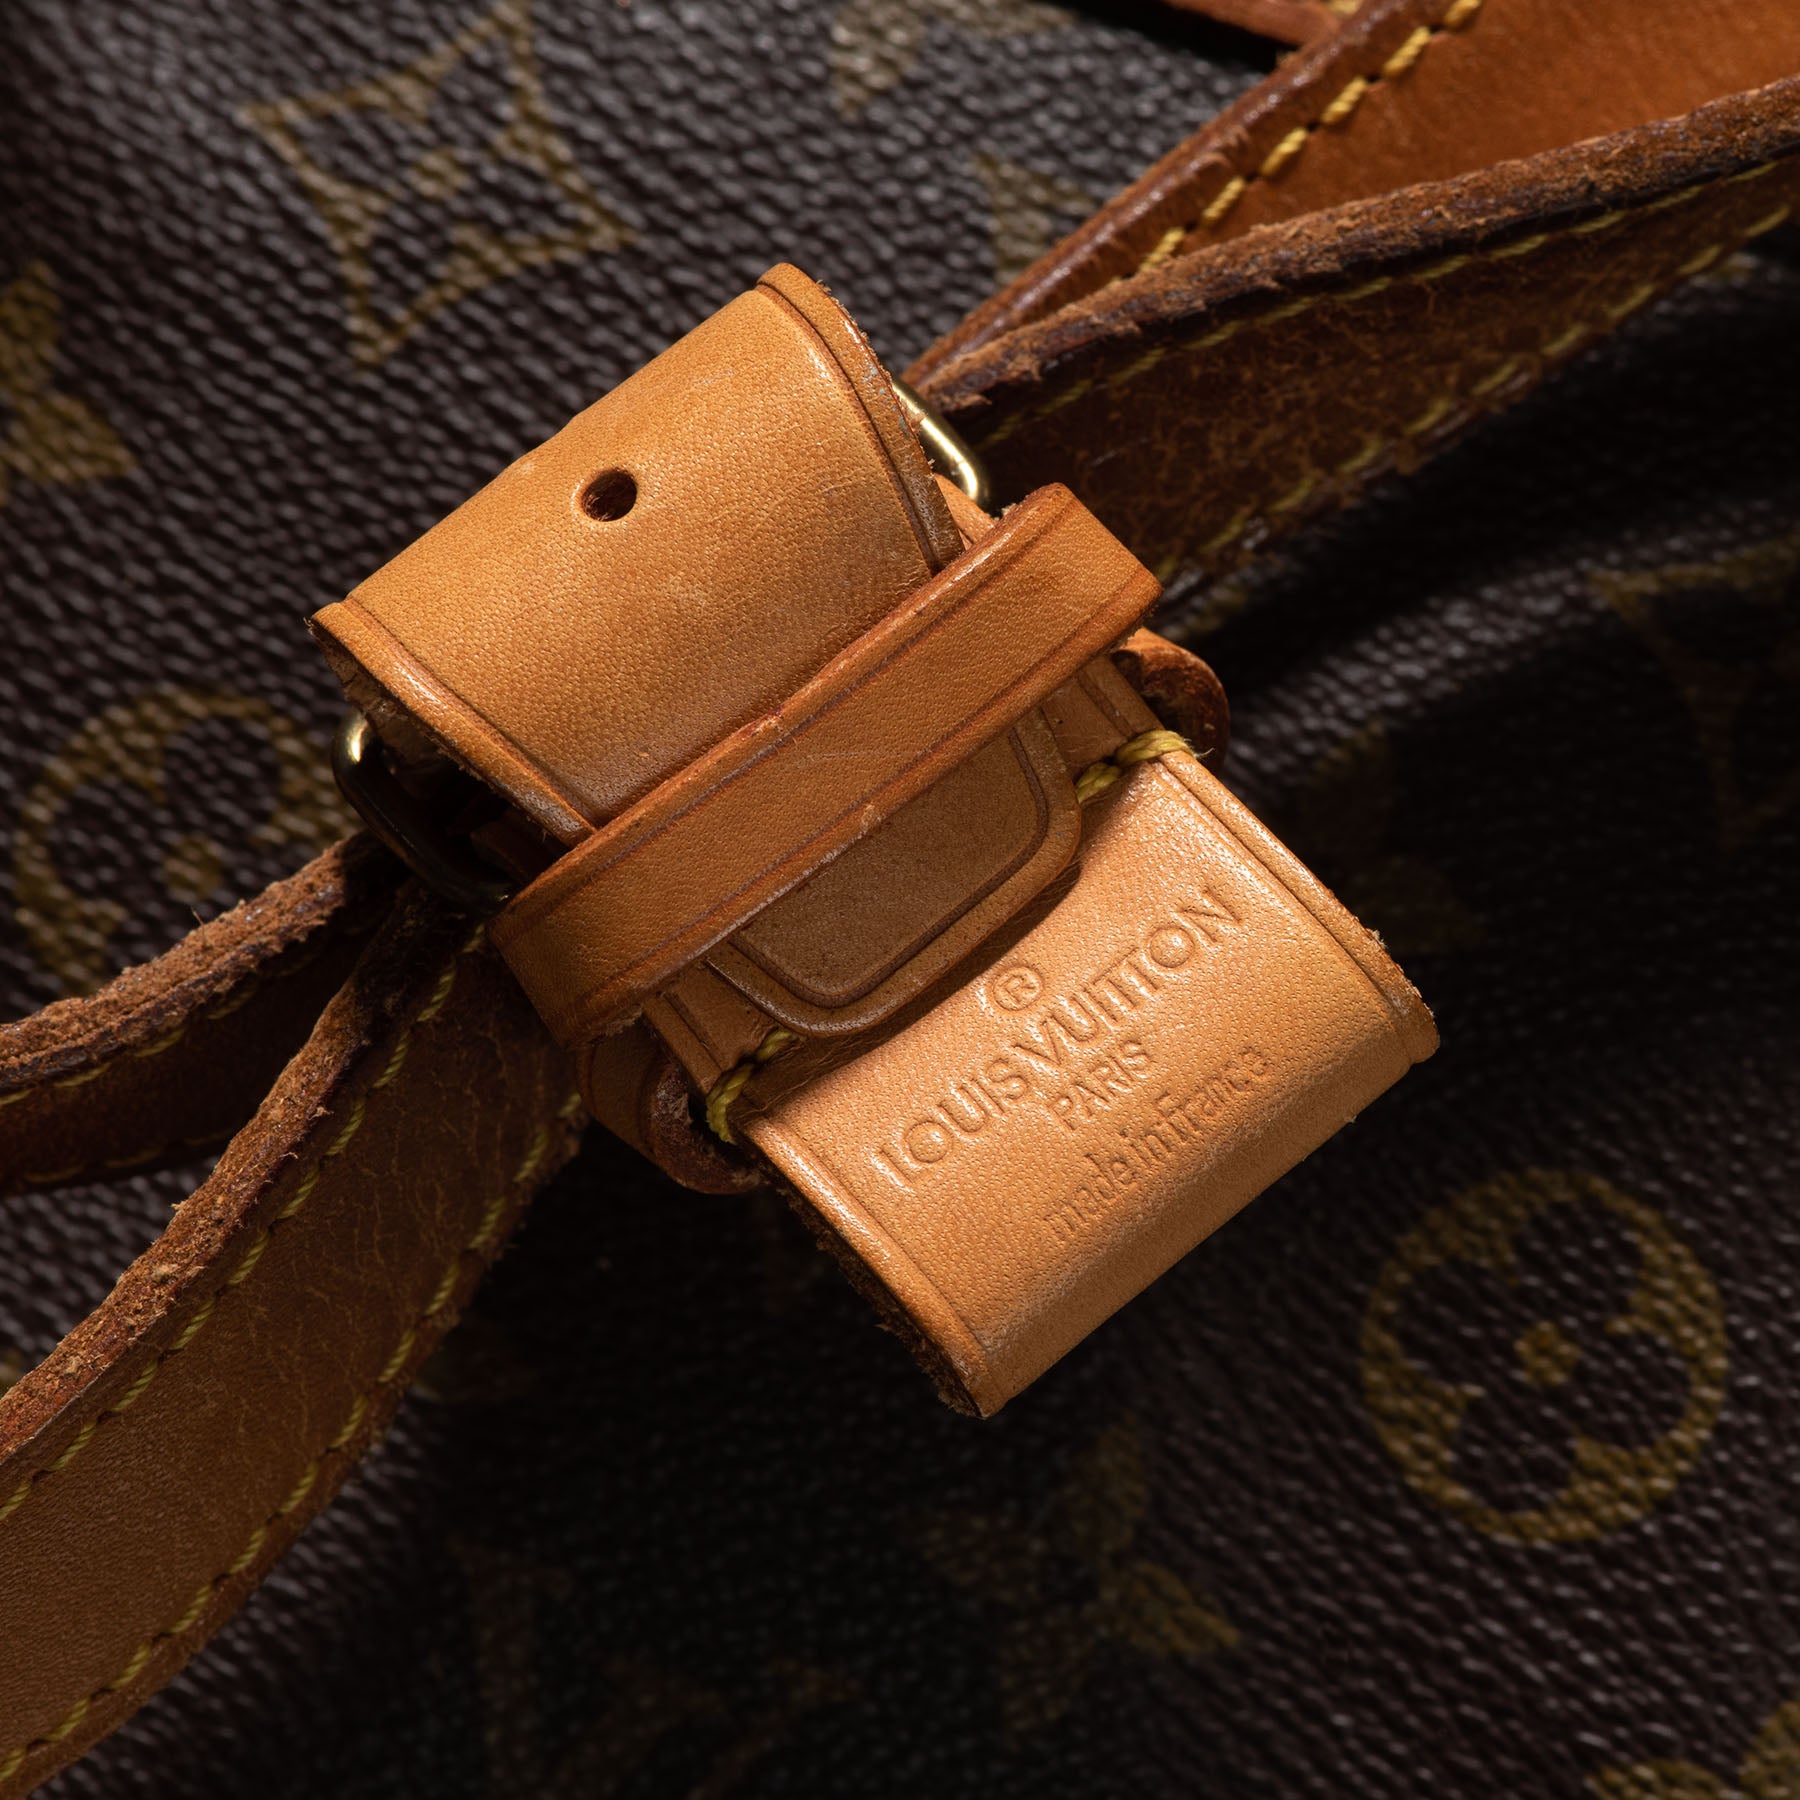 Louis Vuitton Vintage - Monogram Sac Shopping 48 Bag - Brown